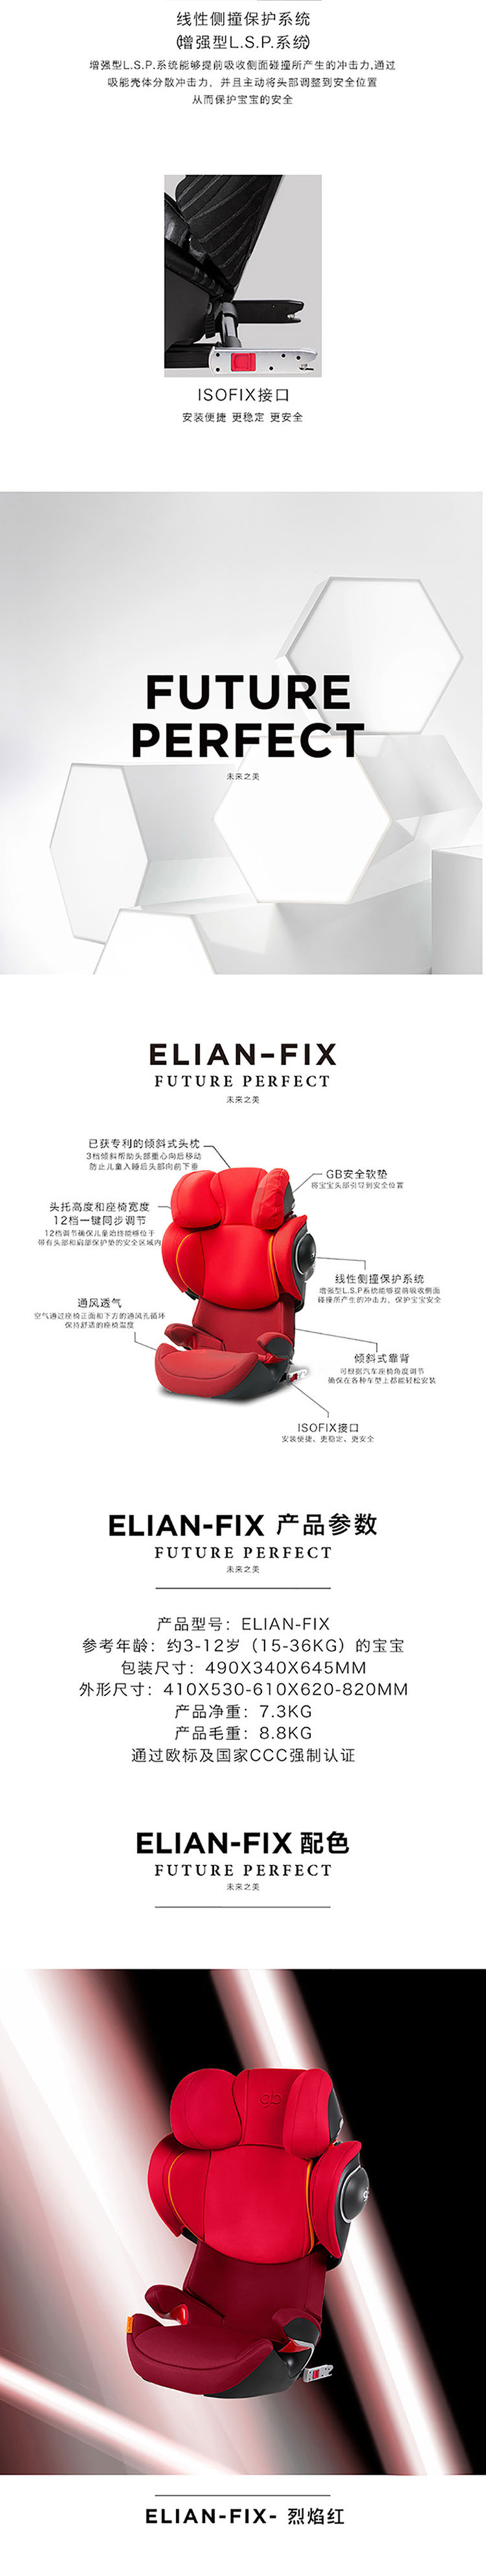 好孩子/gb 铂金线儿童安全座椅 ELIAN-FIX 烈焰红